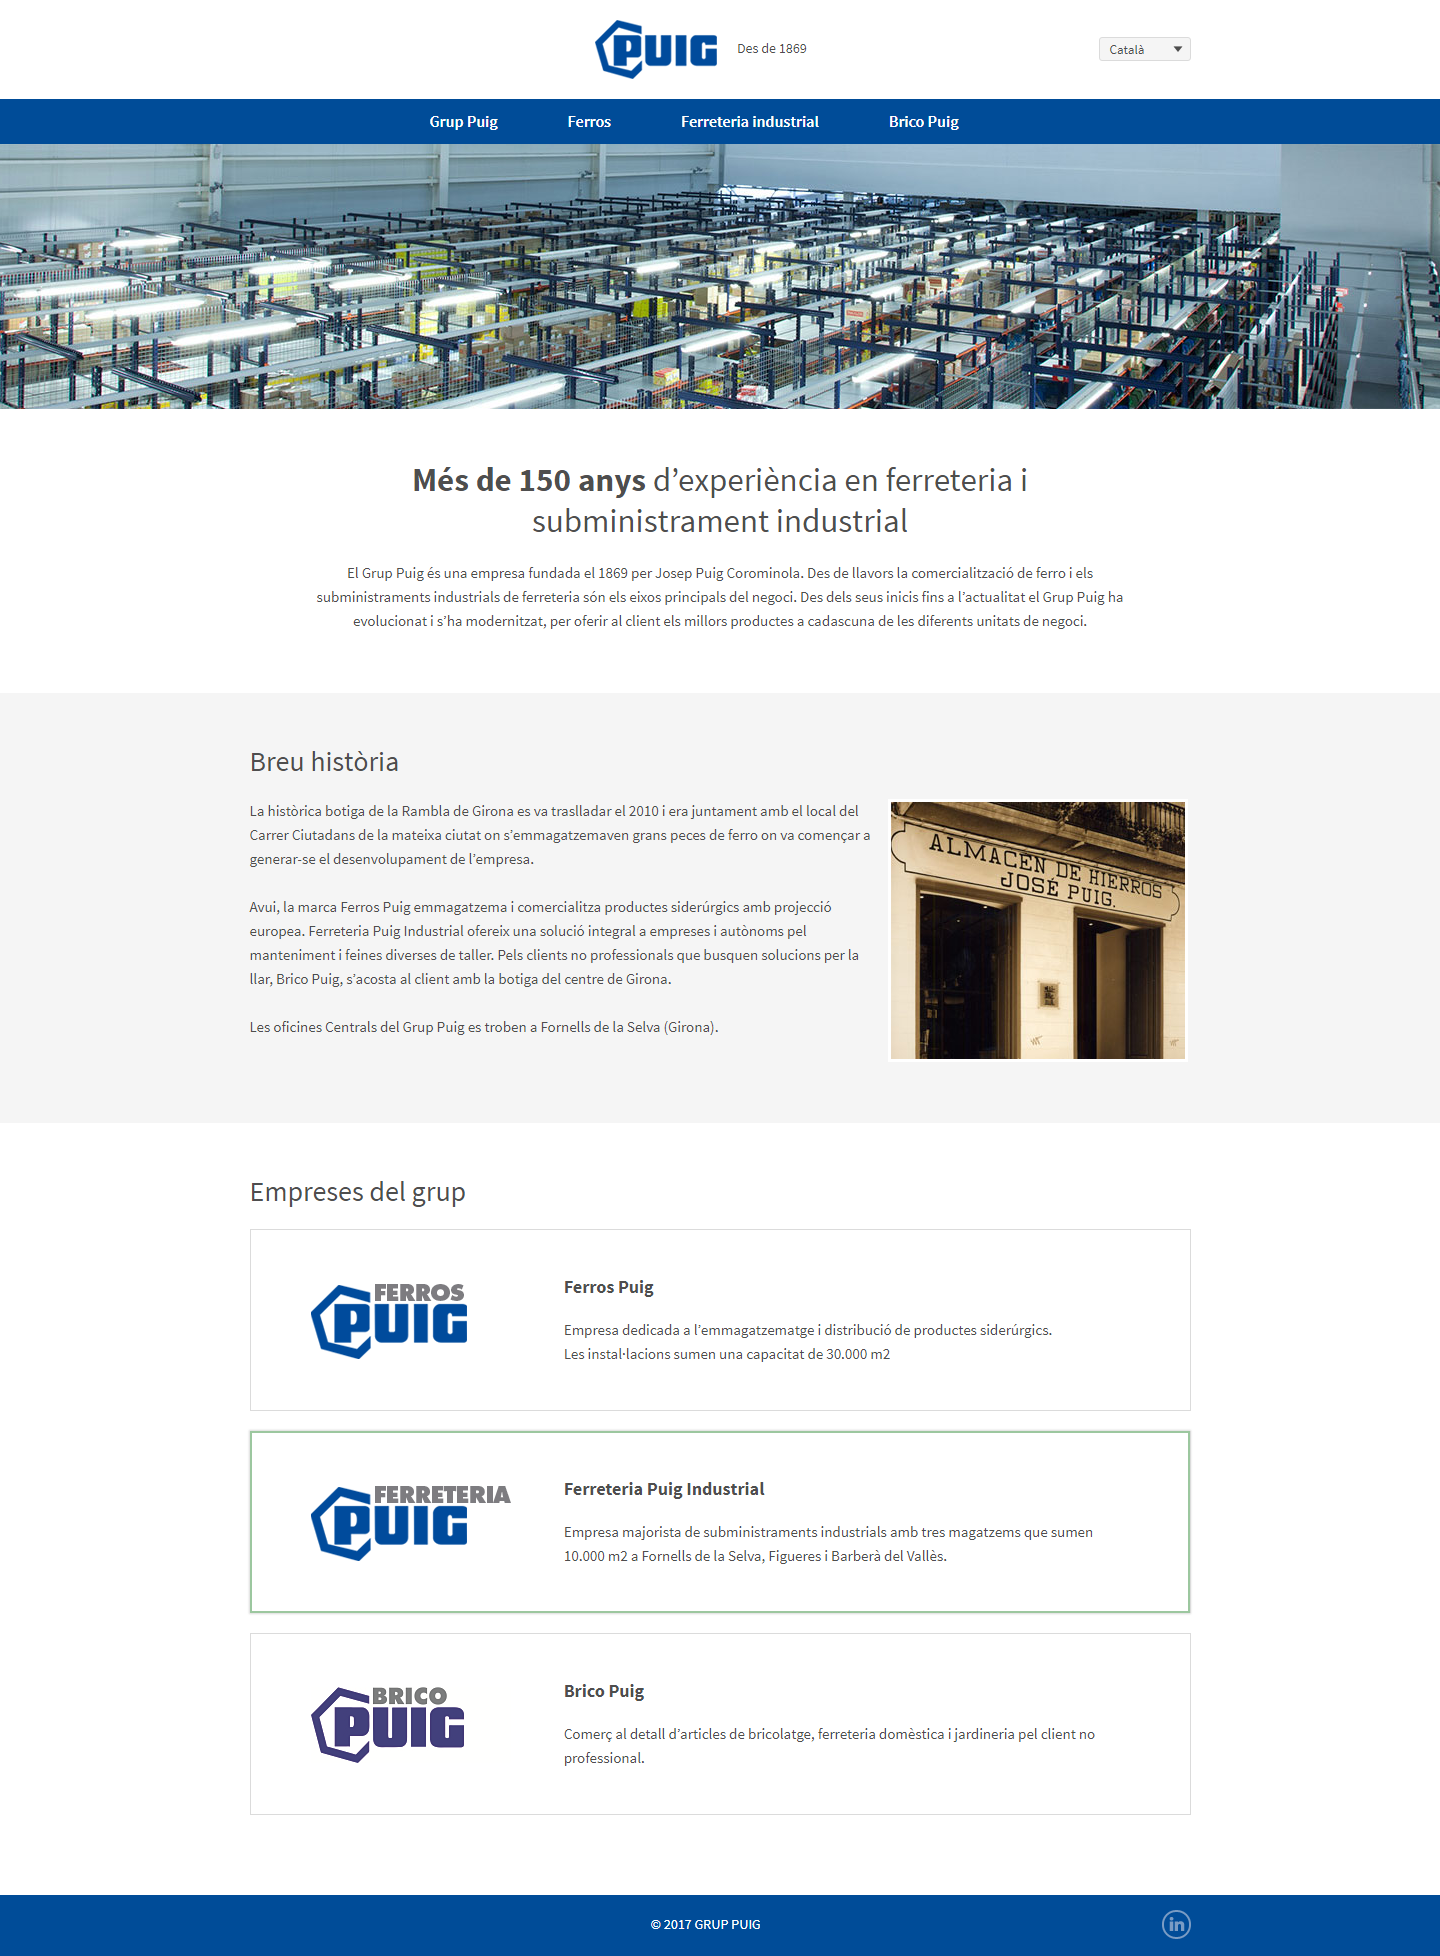 Site Web corporatif Grupo Puig, une entreprise fondée en 1869 qui a évolué et s'est modernisée pour offrir aux clients les meilleurs produits et les présenter virtuellement sur son site Web. de Grup Puig